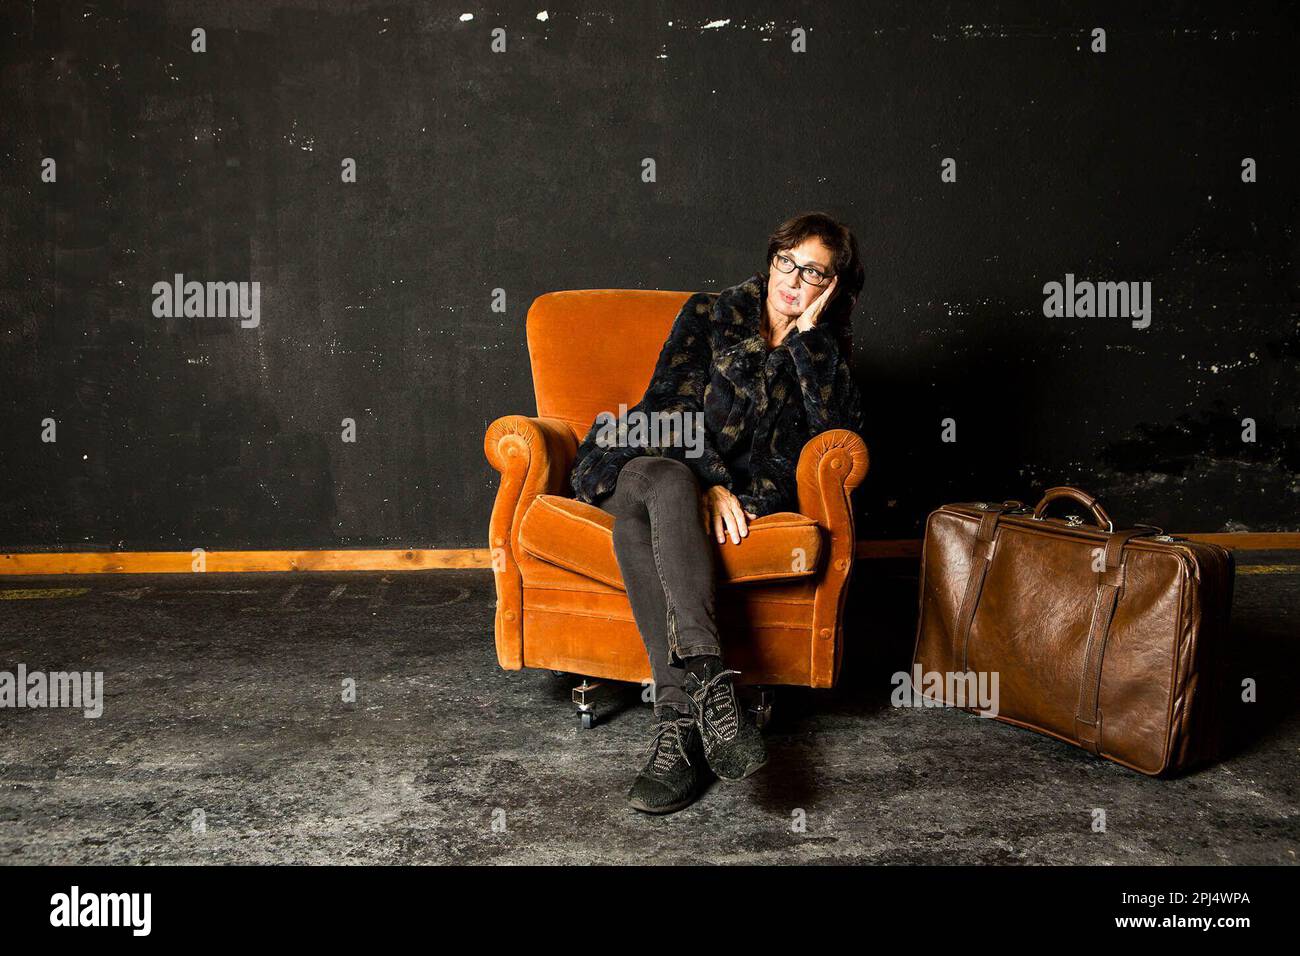 Sílvia Munt, actriz y directora de cine. Barcellona, fotografía del año 2017. Foto Stock